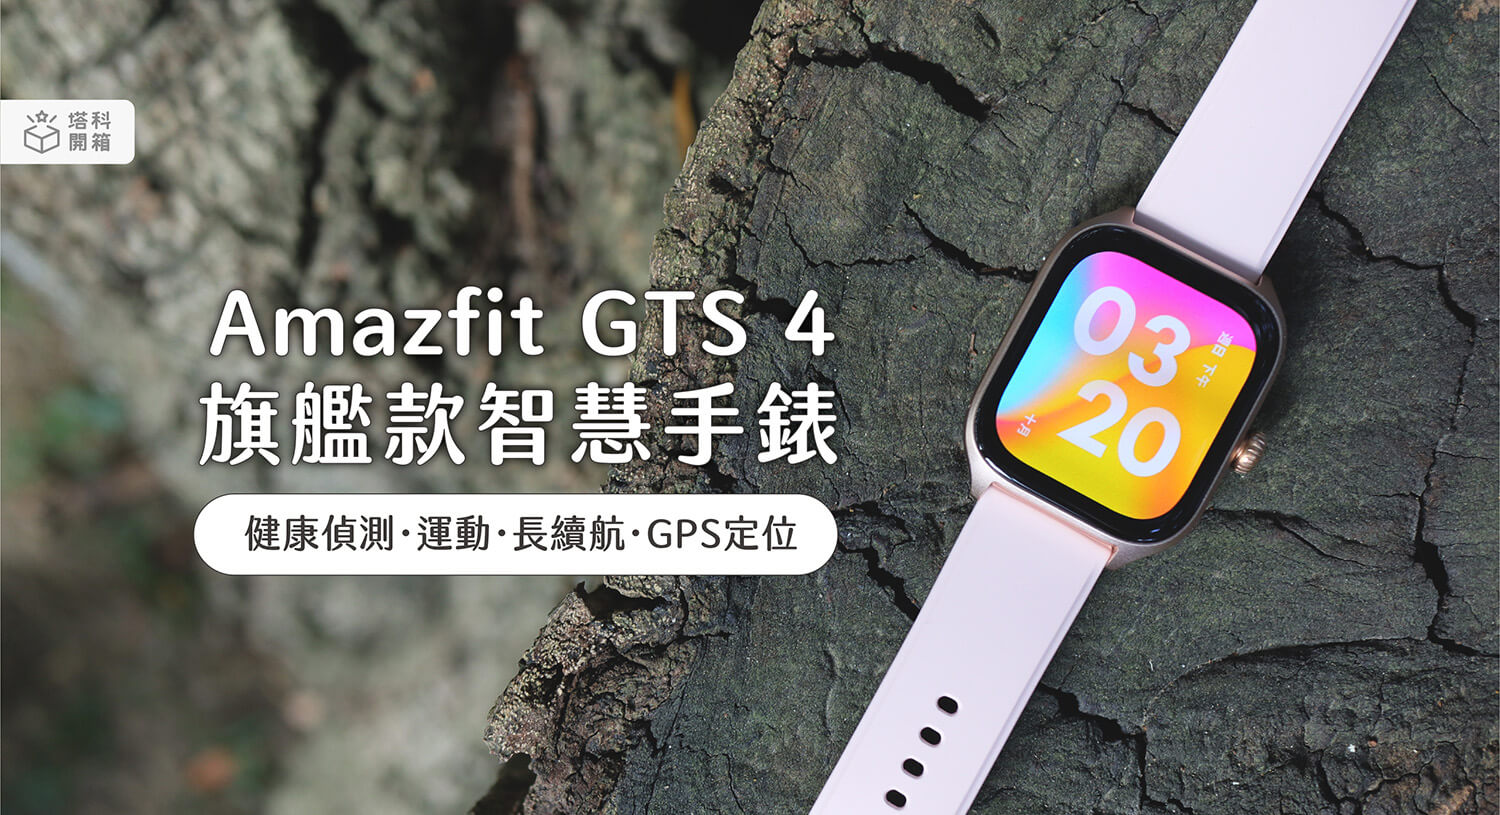 【開箱評測】Amazfit GTS 4 GPS 智慧手錶：全天候健康監測及雙頻六星定位技術